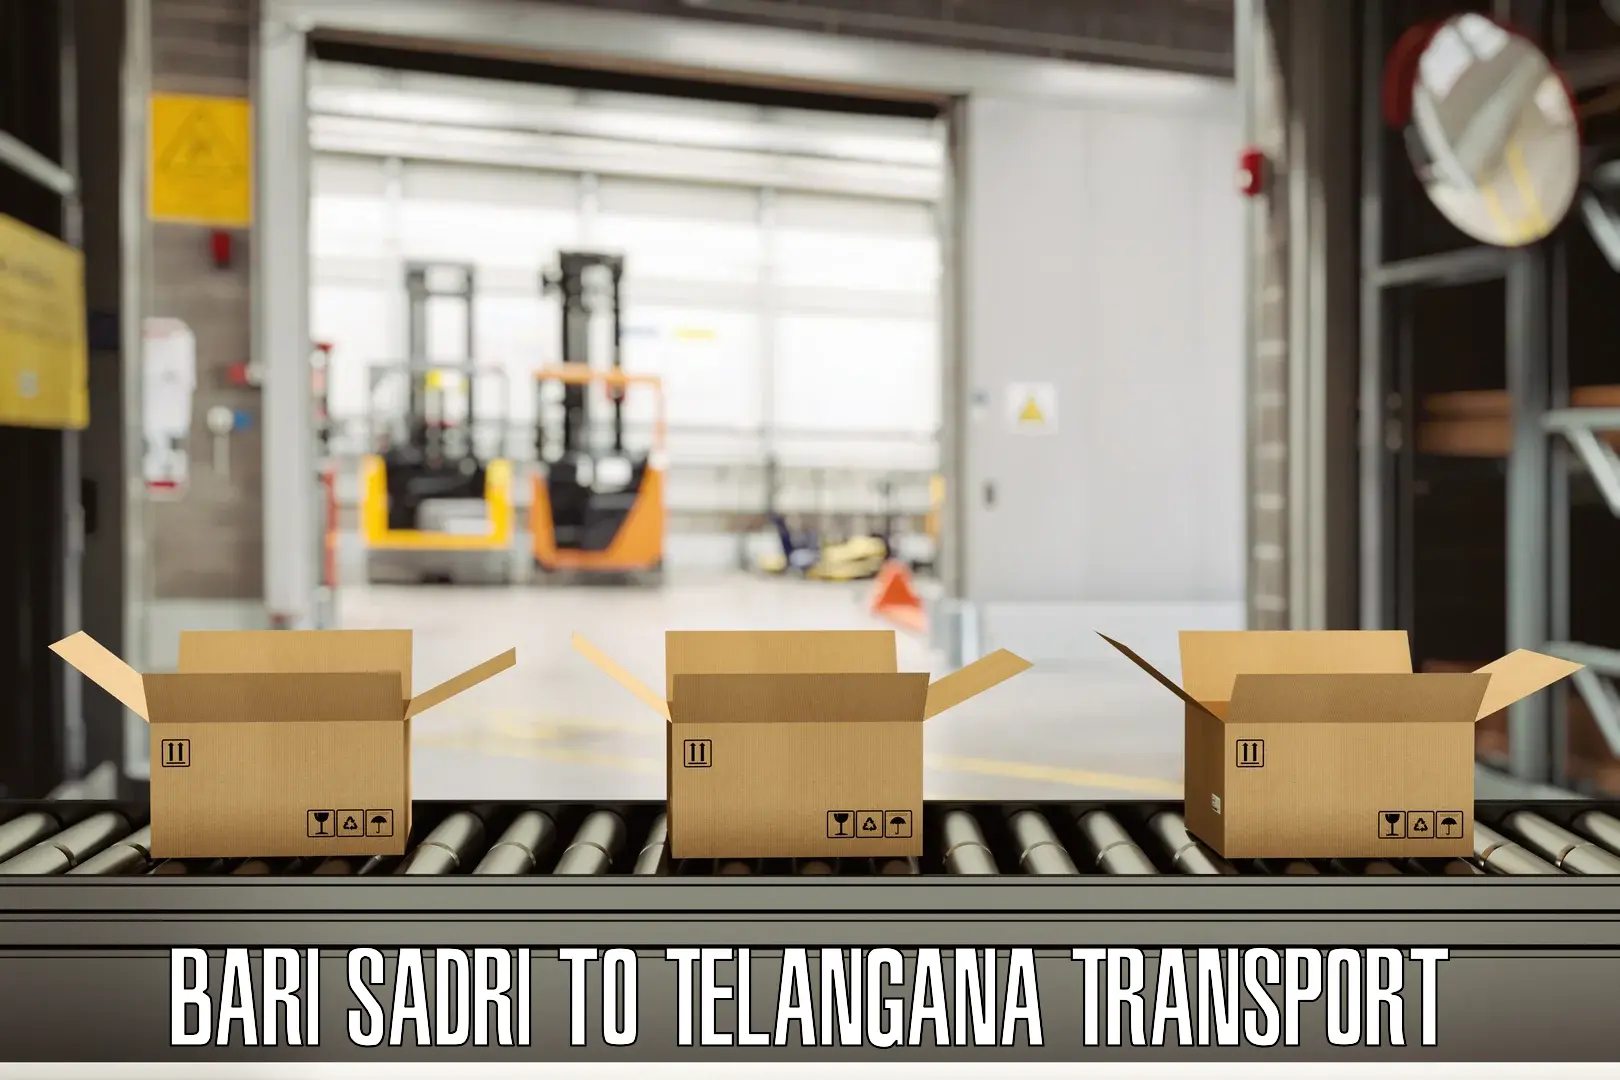 Goods delivery service in Bari Sadri to Bejjanki